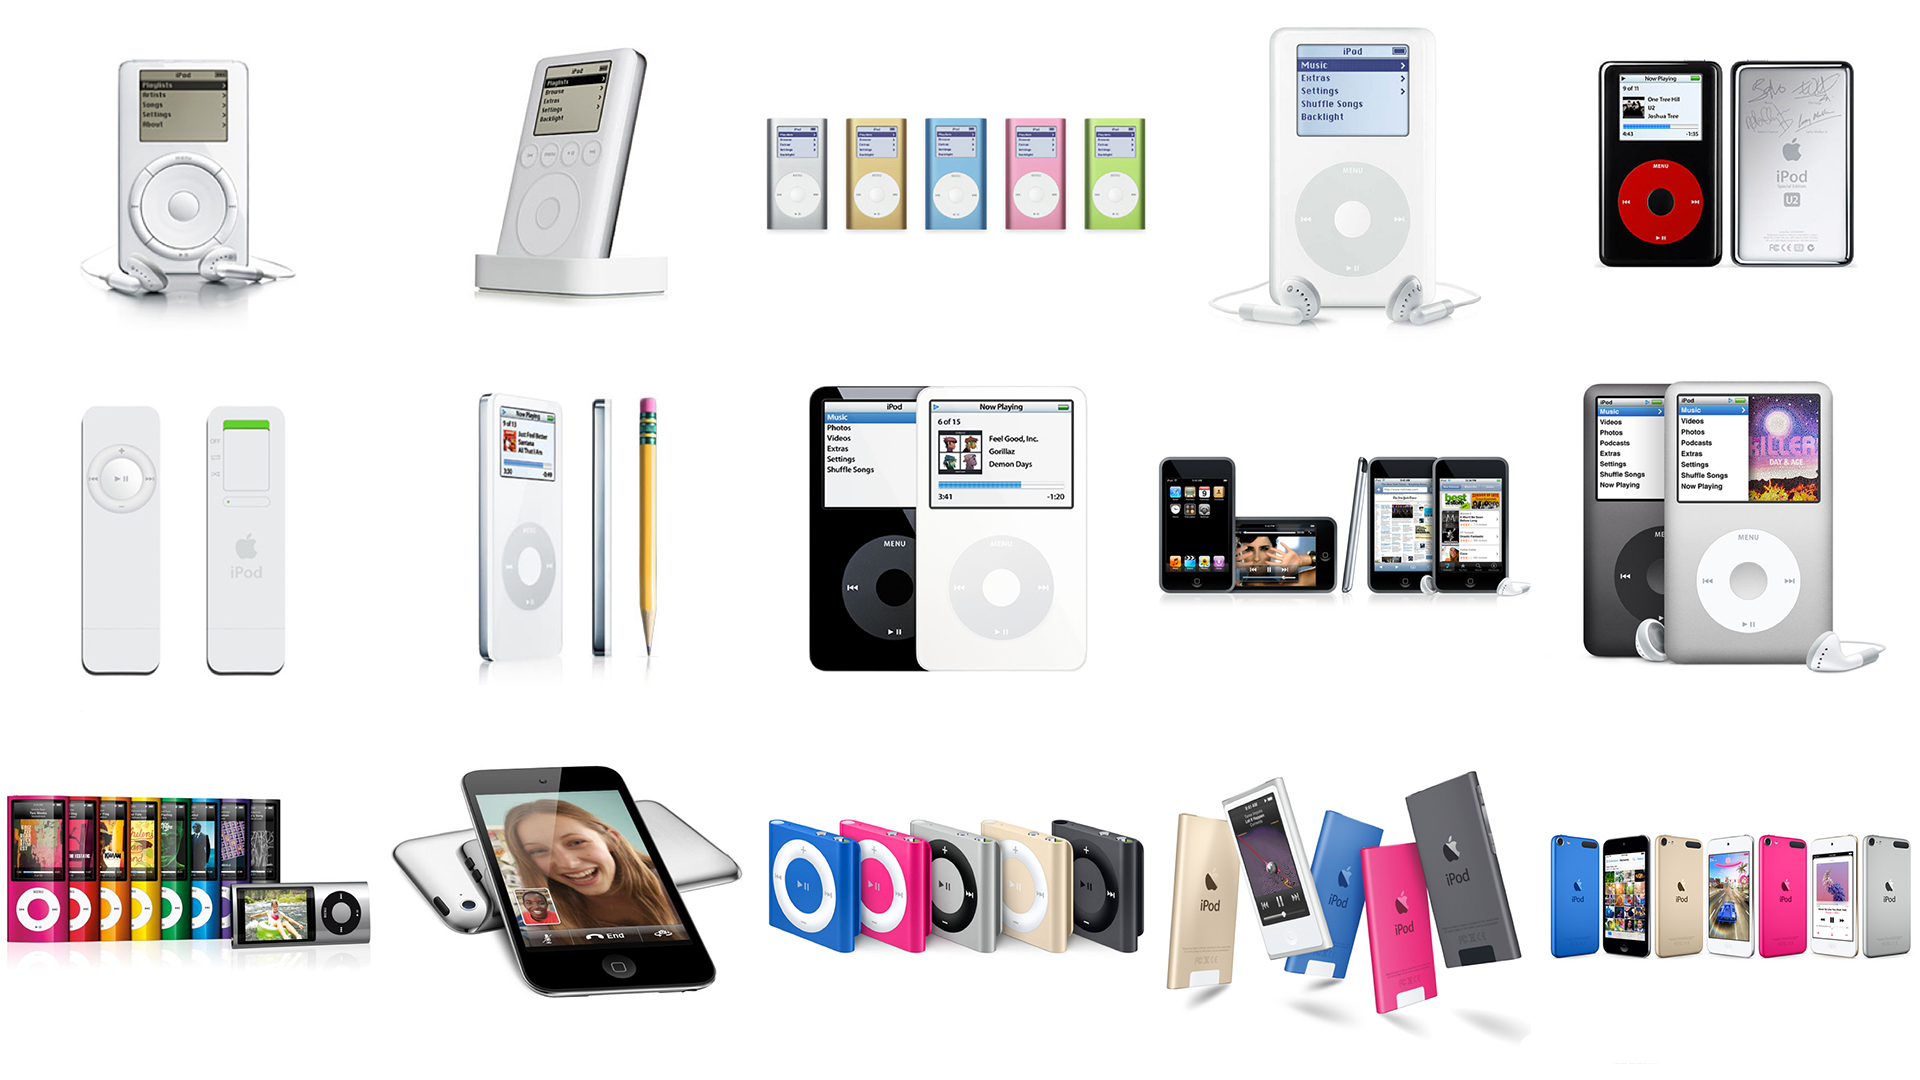 Ulike versjoner av iPod gjennom årene